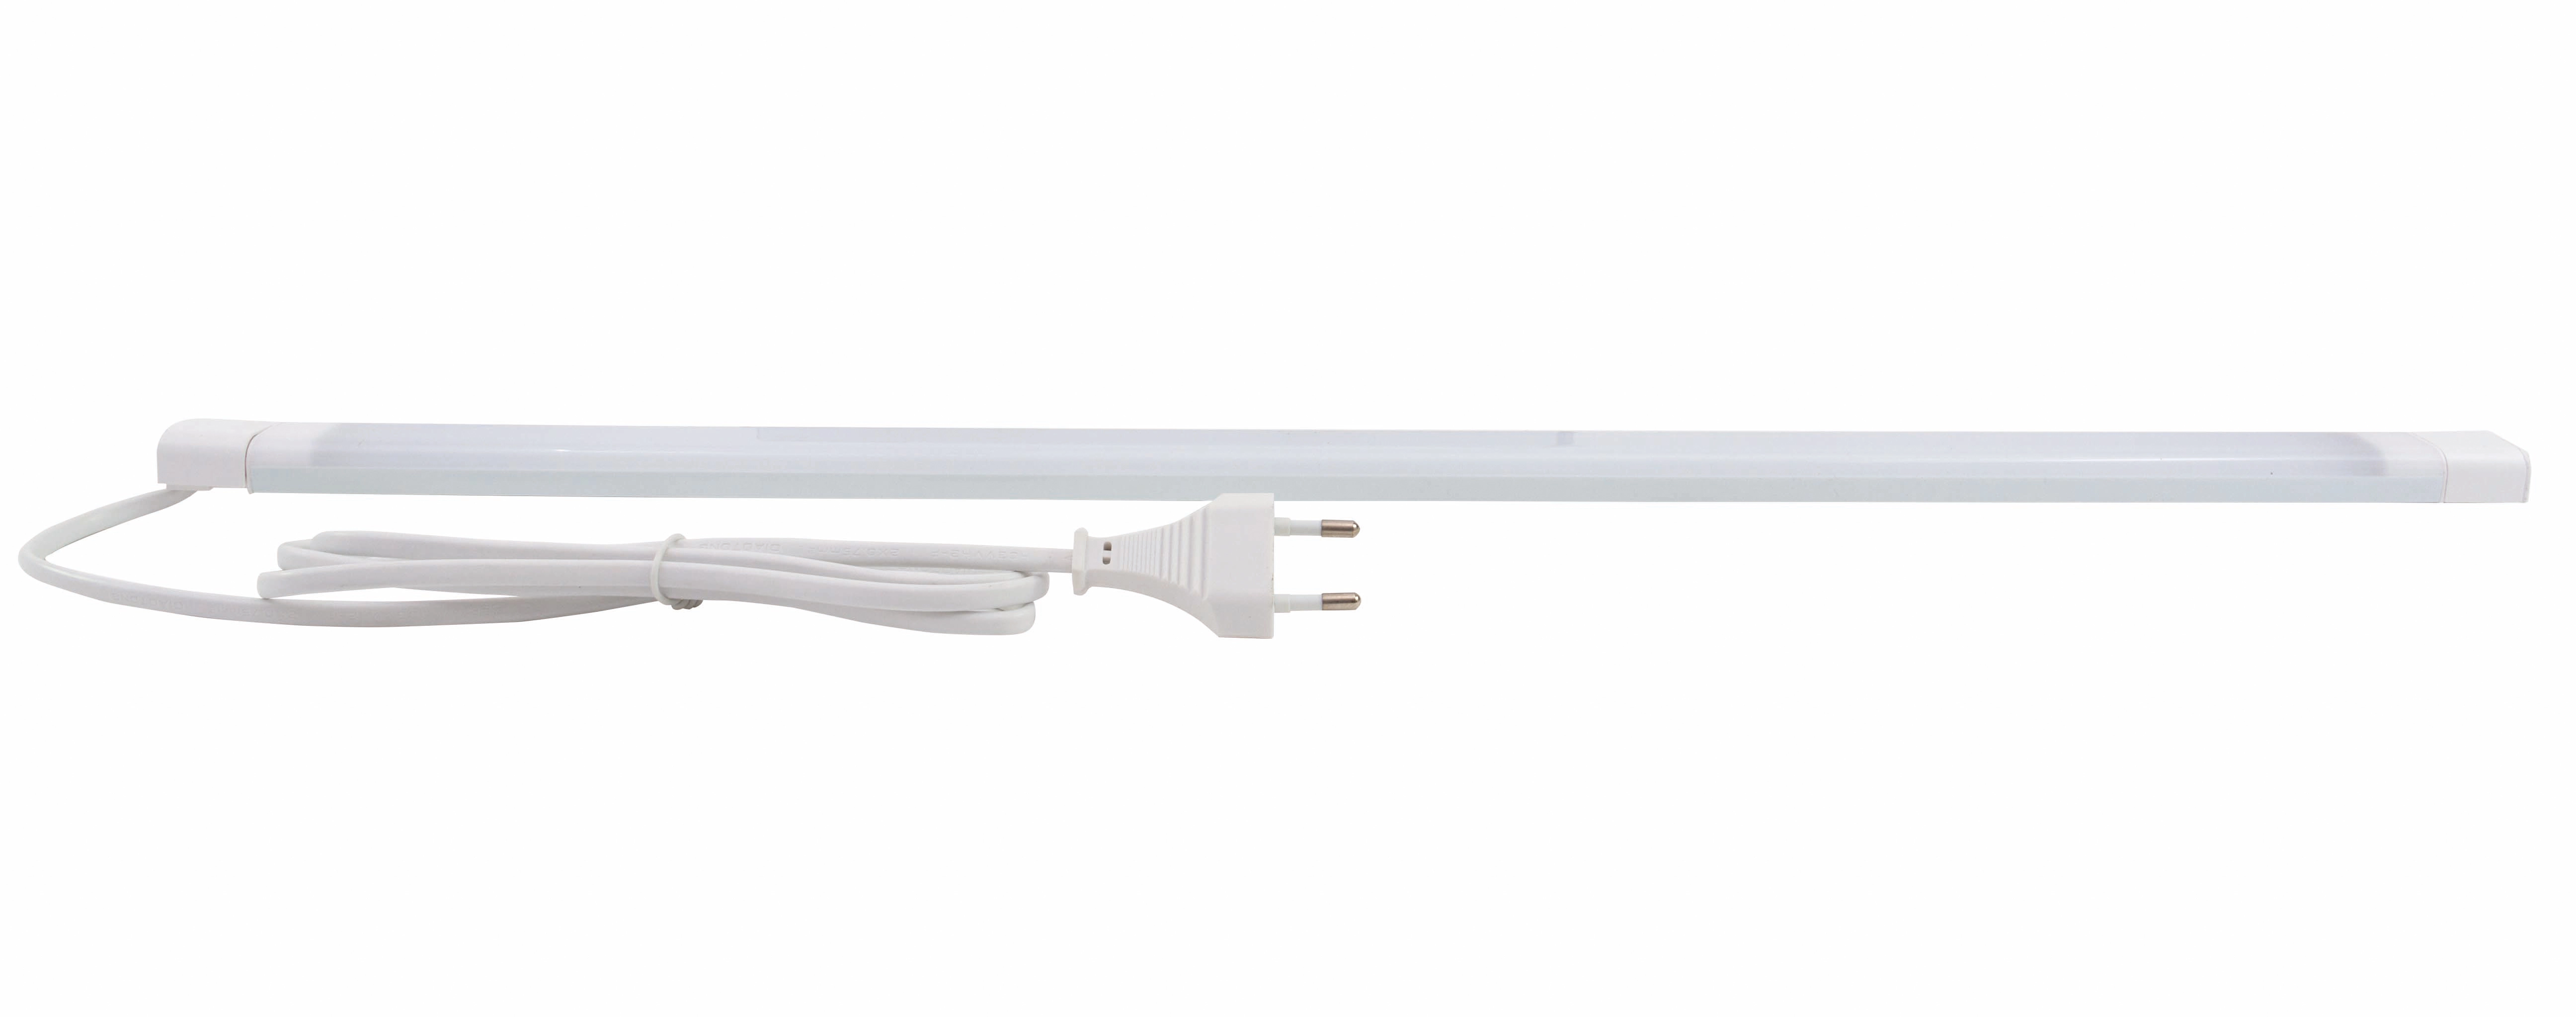 REV Ritter LED-Unterbauleuchte V600 60 cm 560 lm 3000 K Schalter Weiß  kaufen bei OBI